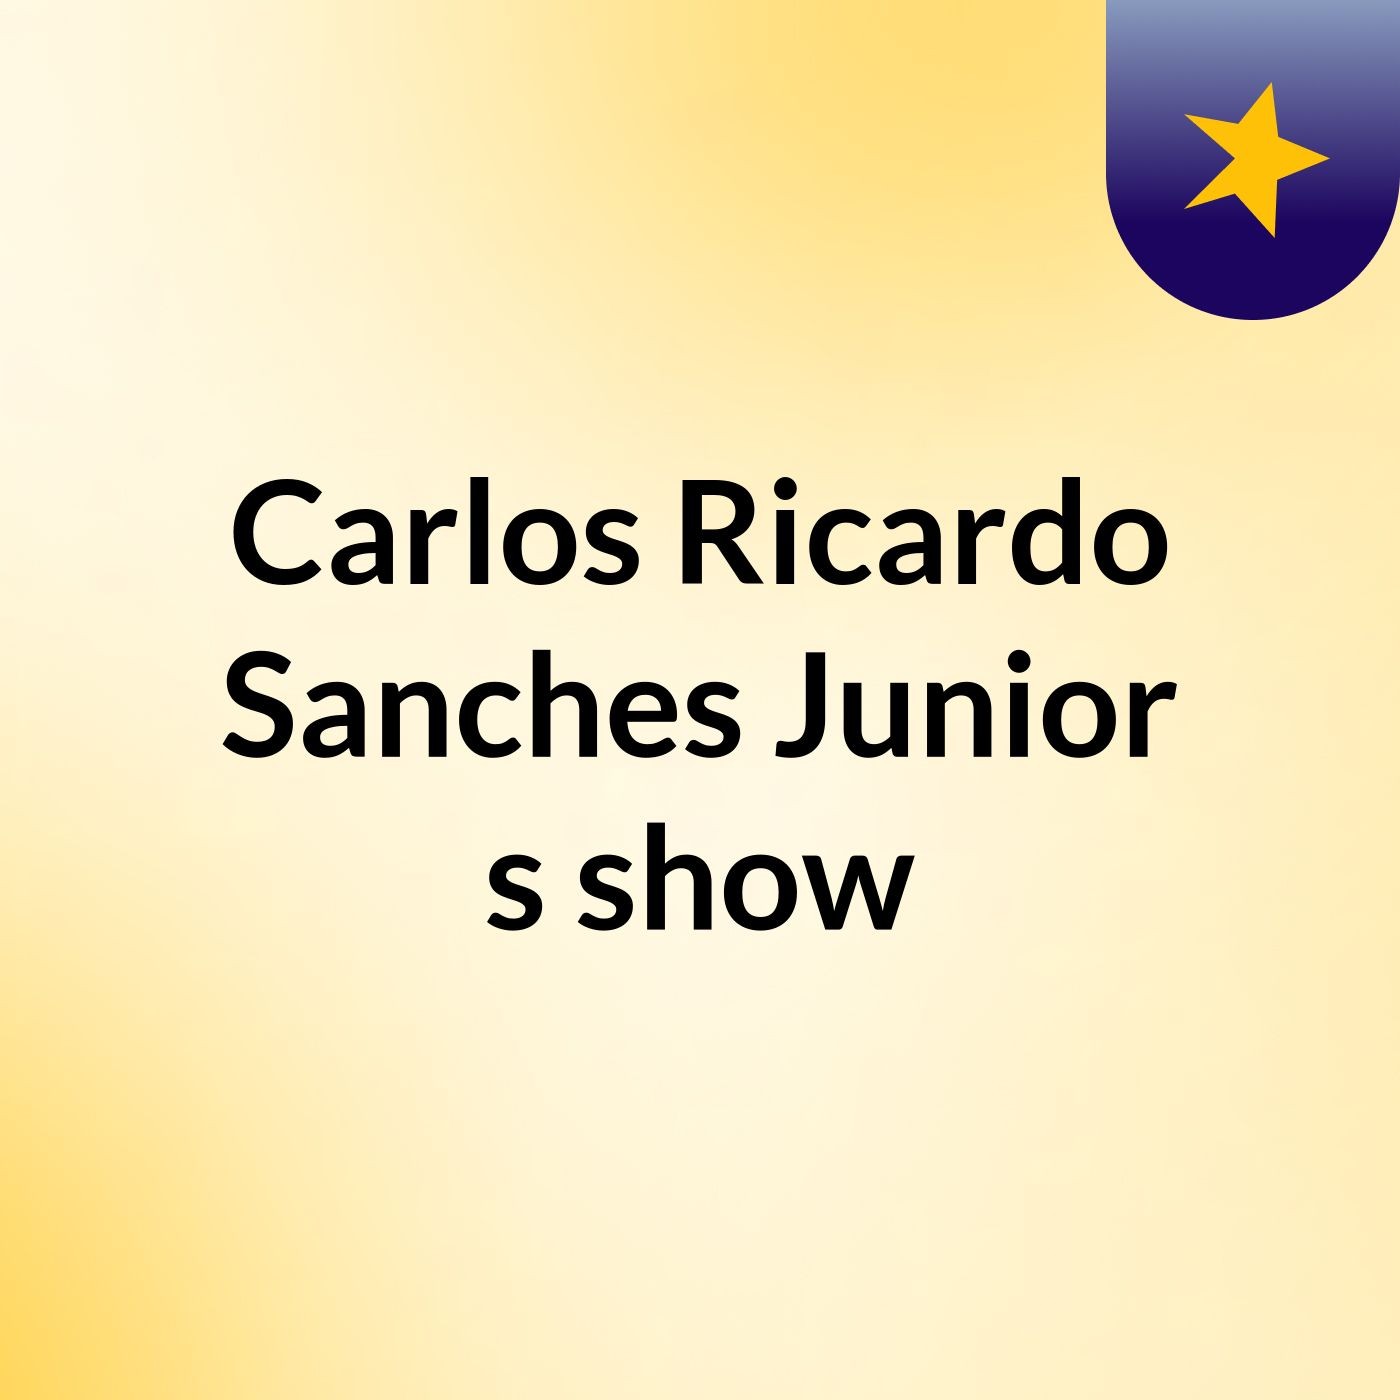 Carlos Ricardo Sanches Junior's show